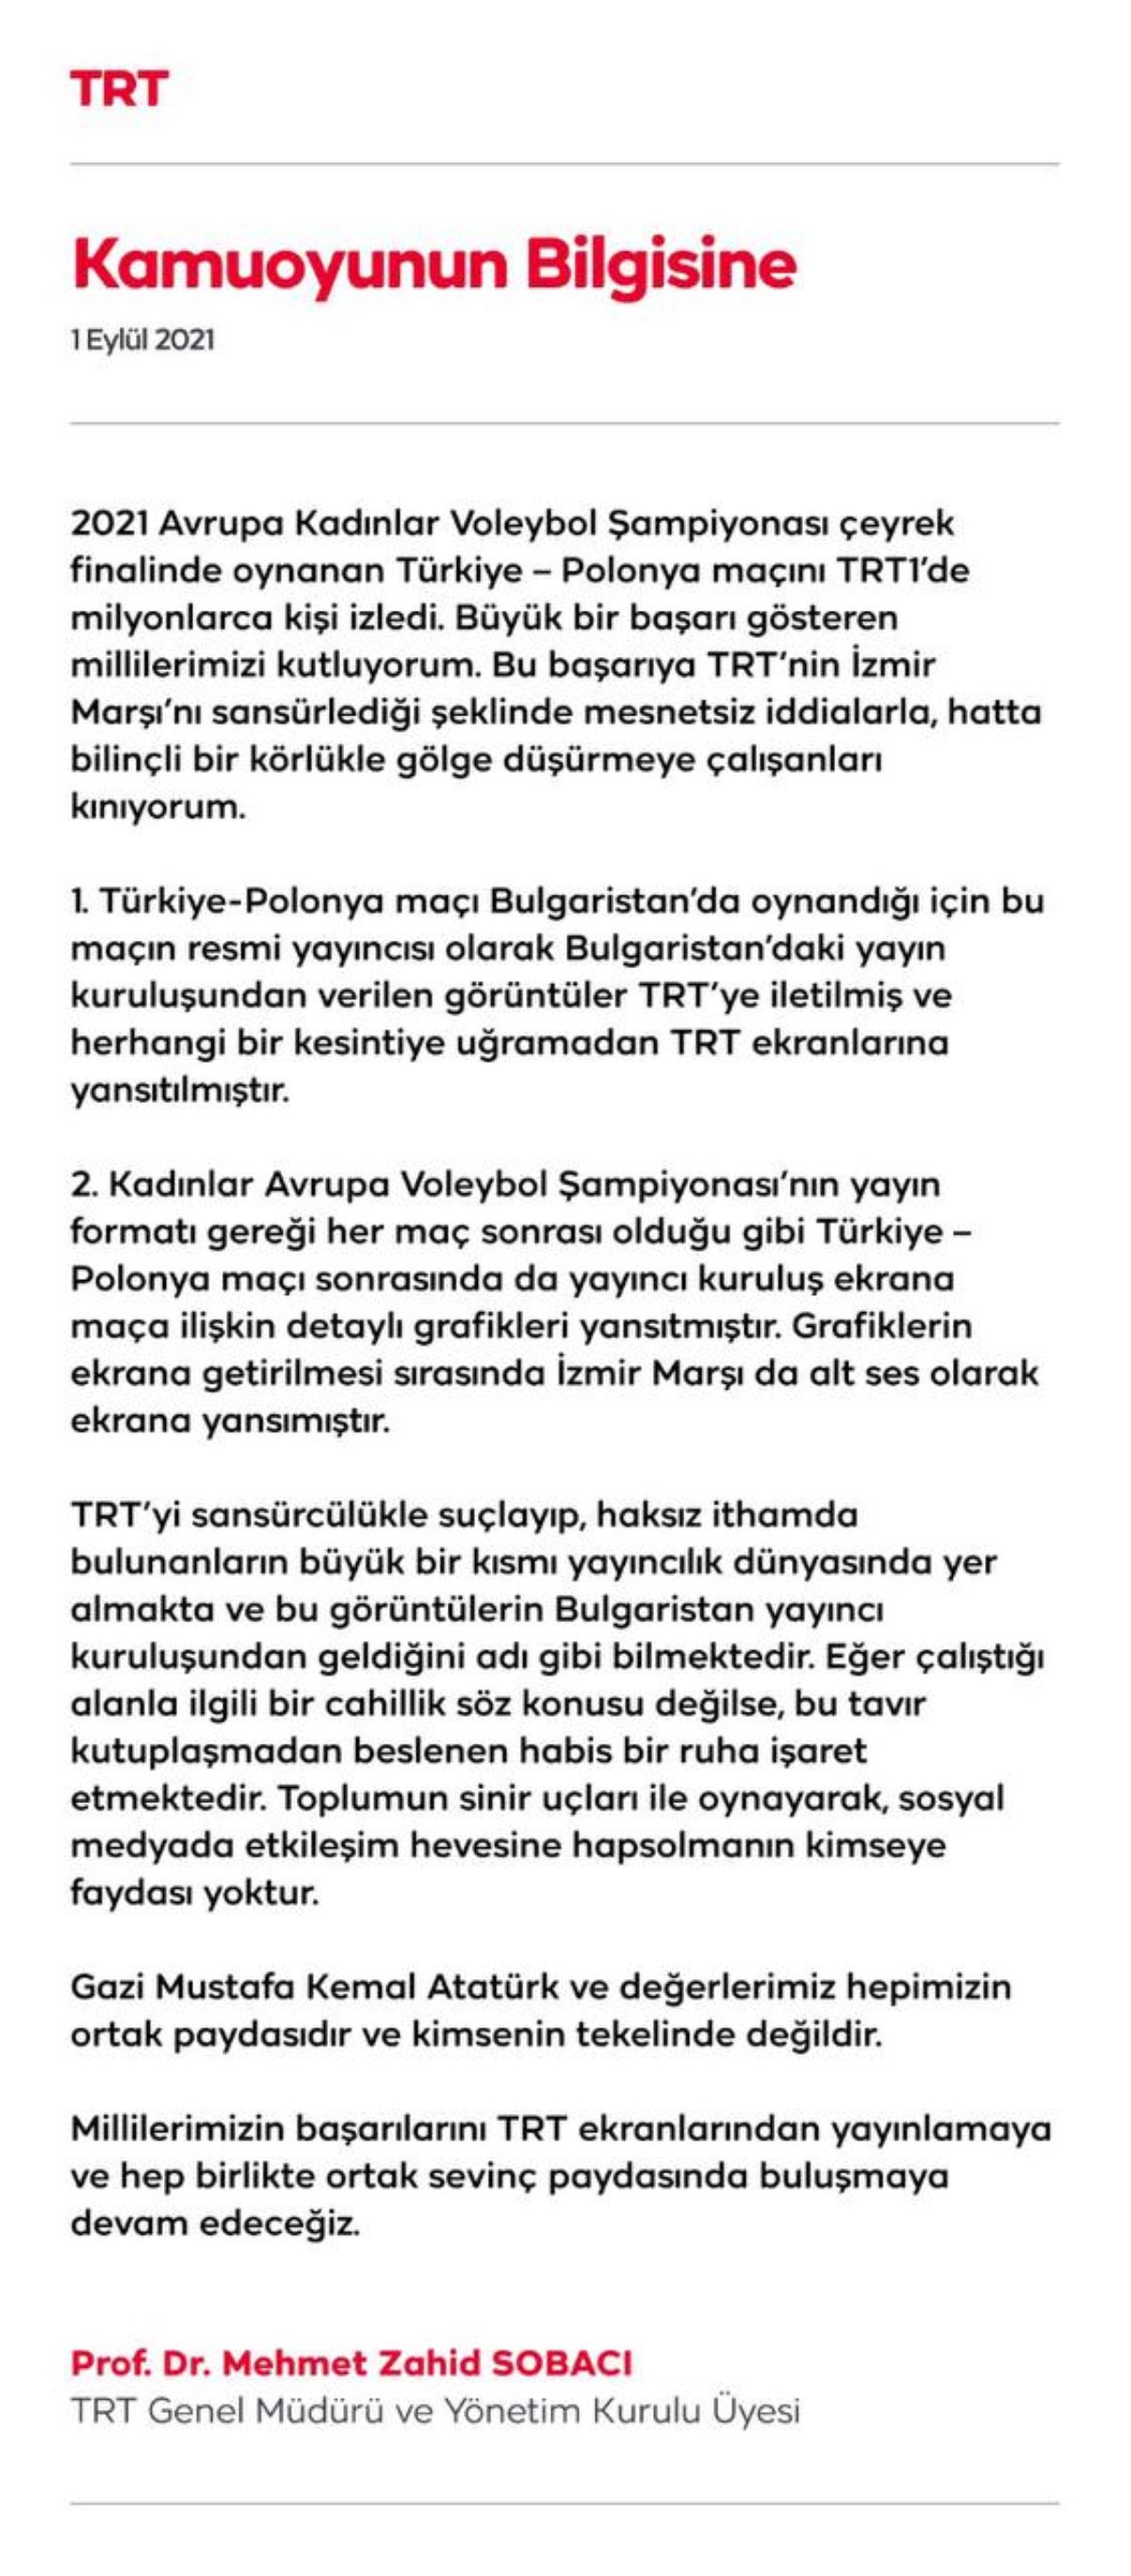 Son Dakika... TRT'den İzmir Marşı ile ilgili açıklama